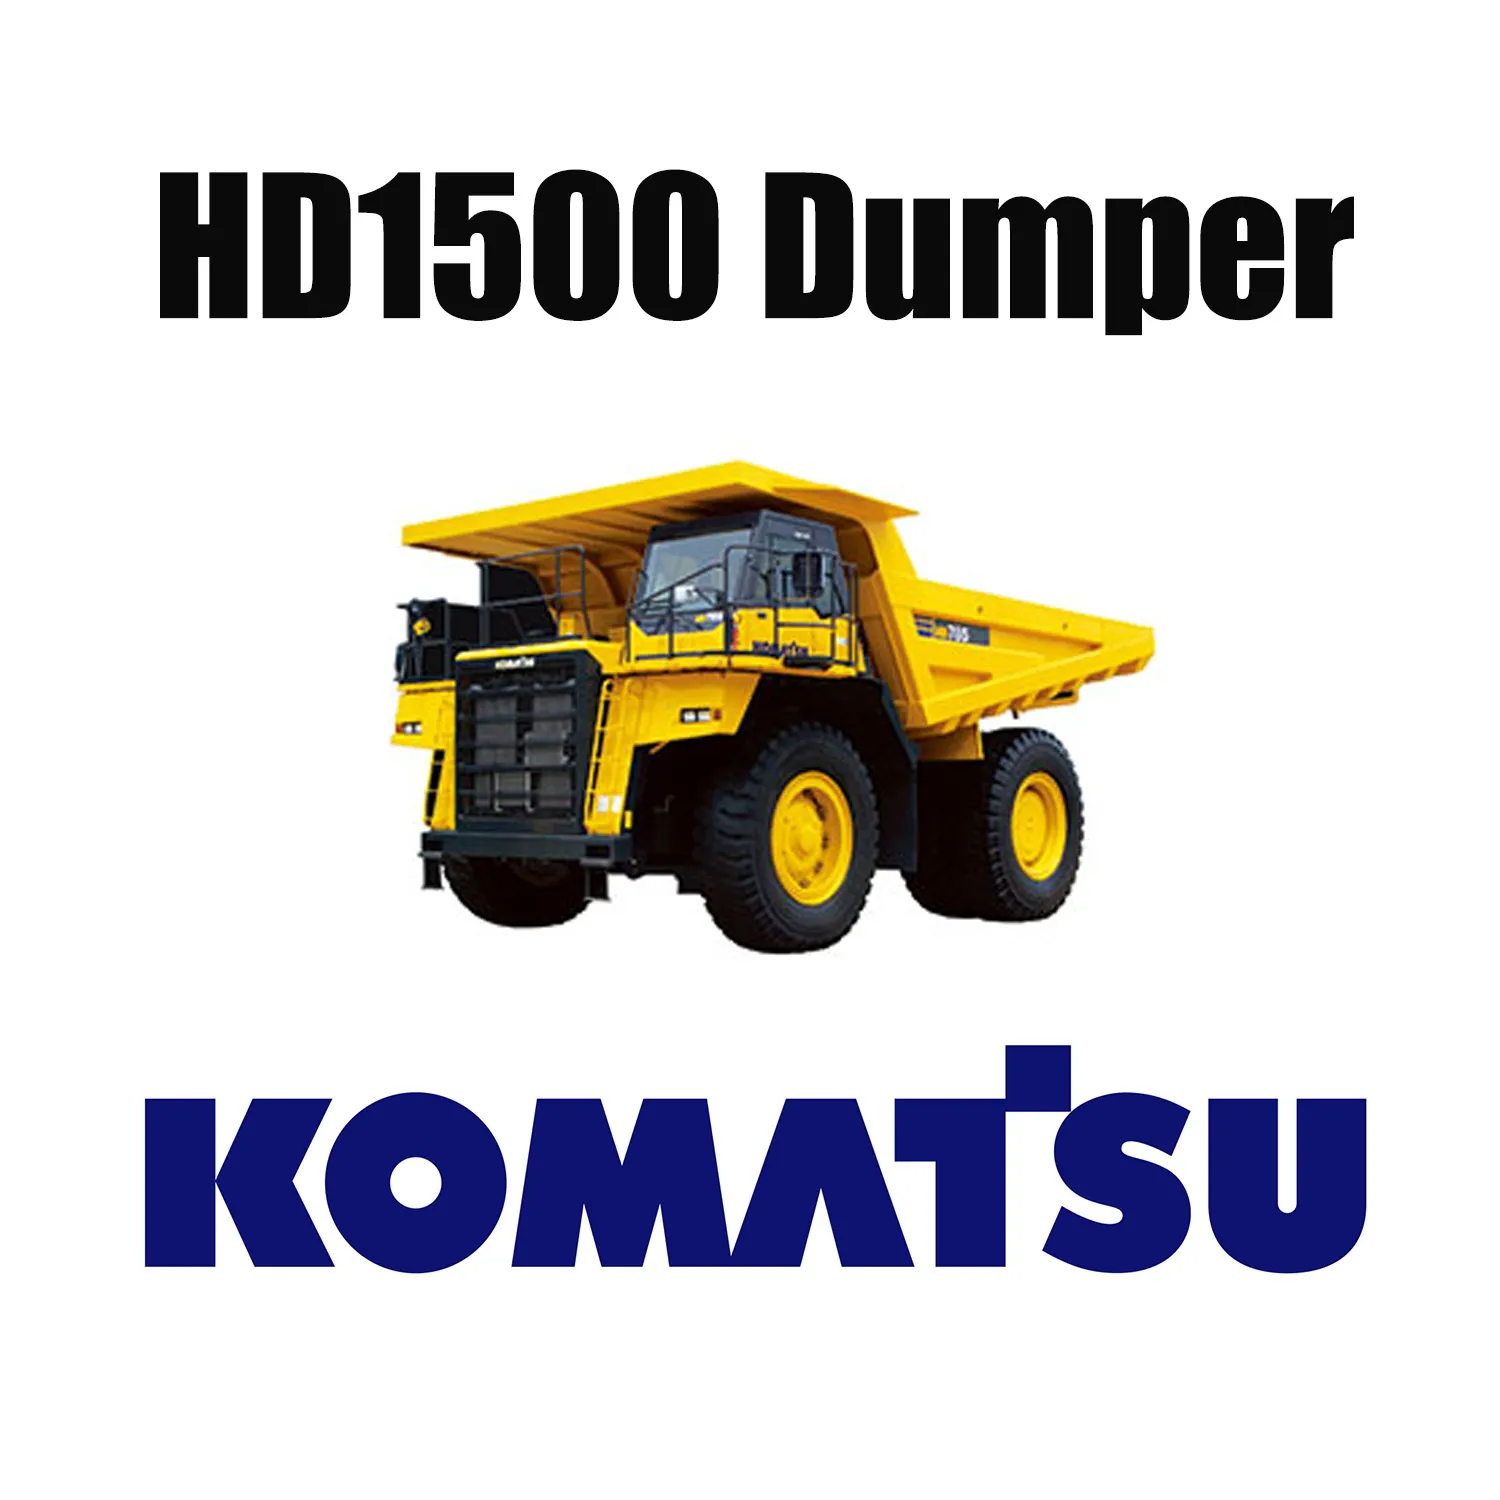 شاحنة ميكانيكية KOMATSU HD1500 تتلاءم مع إطارات EarthMover المتخصصة 33.00R51.5